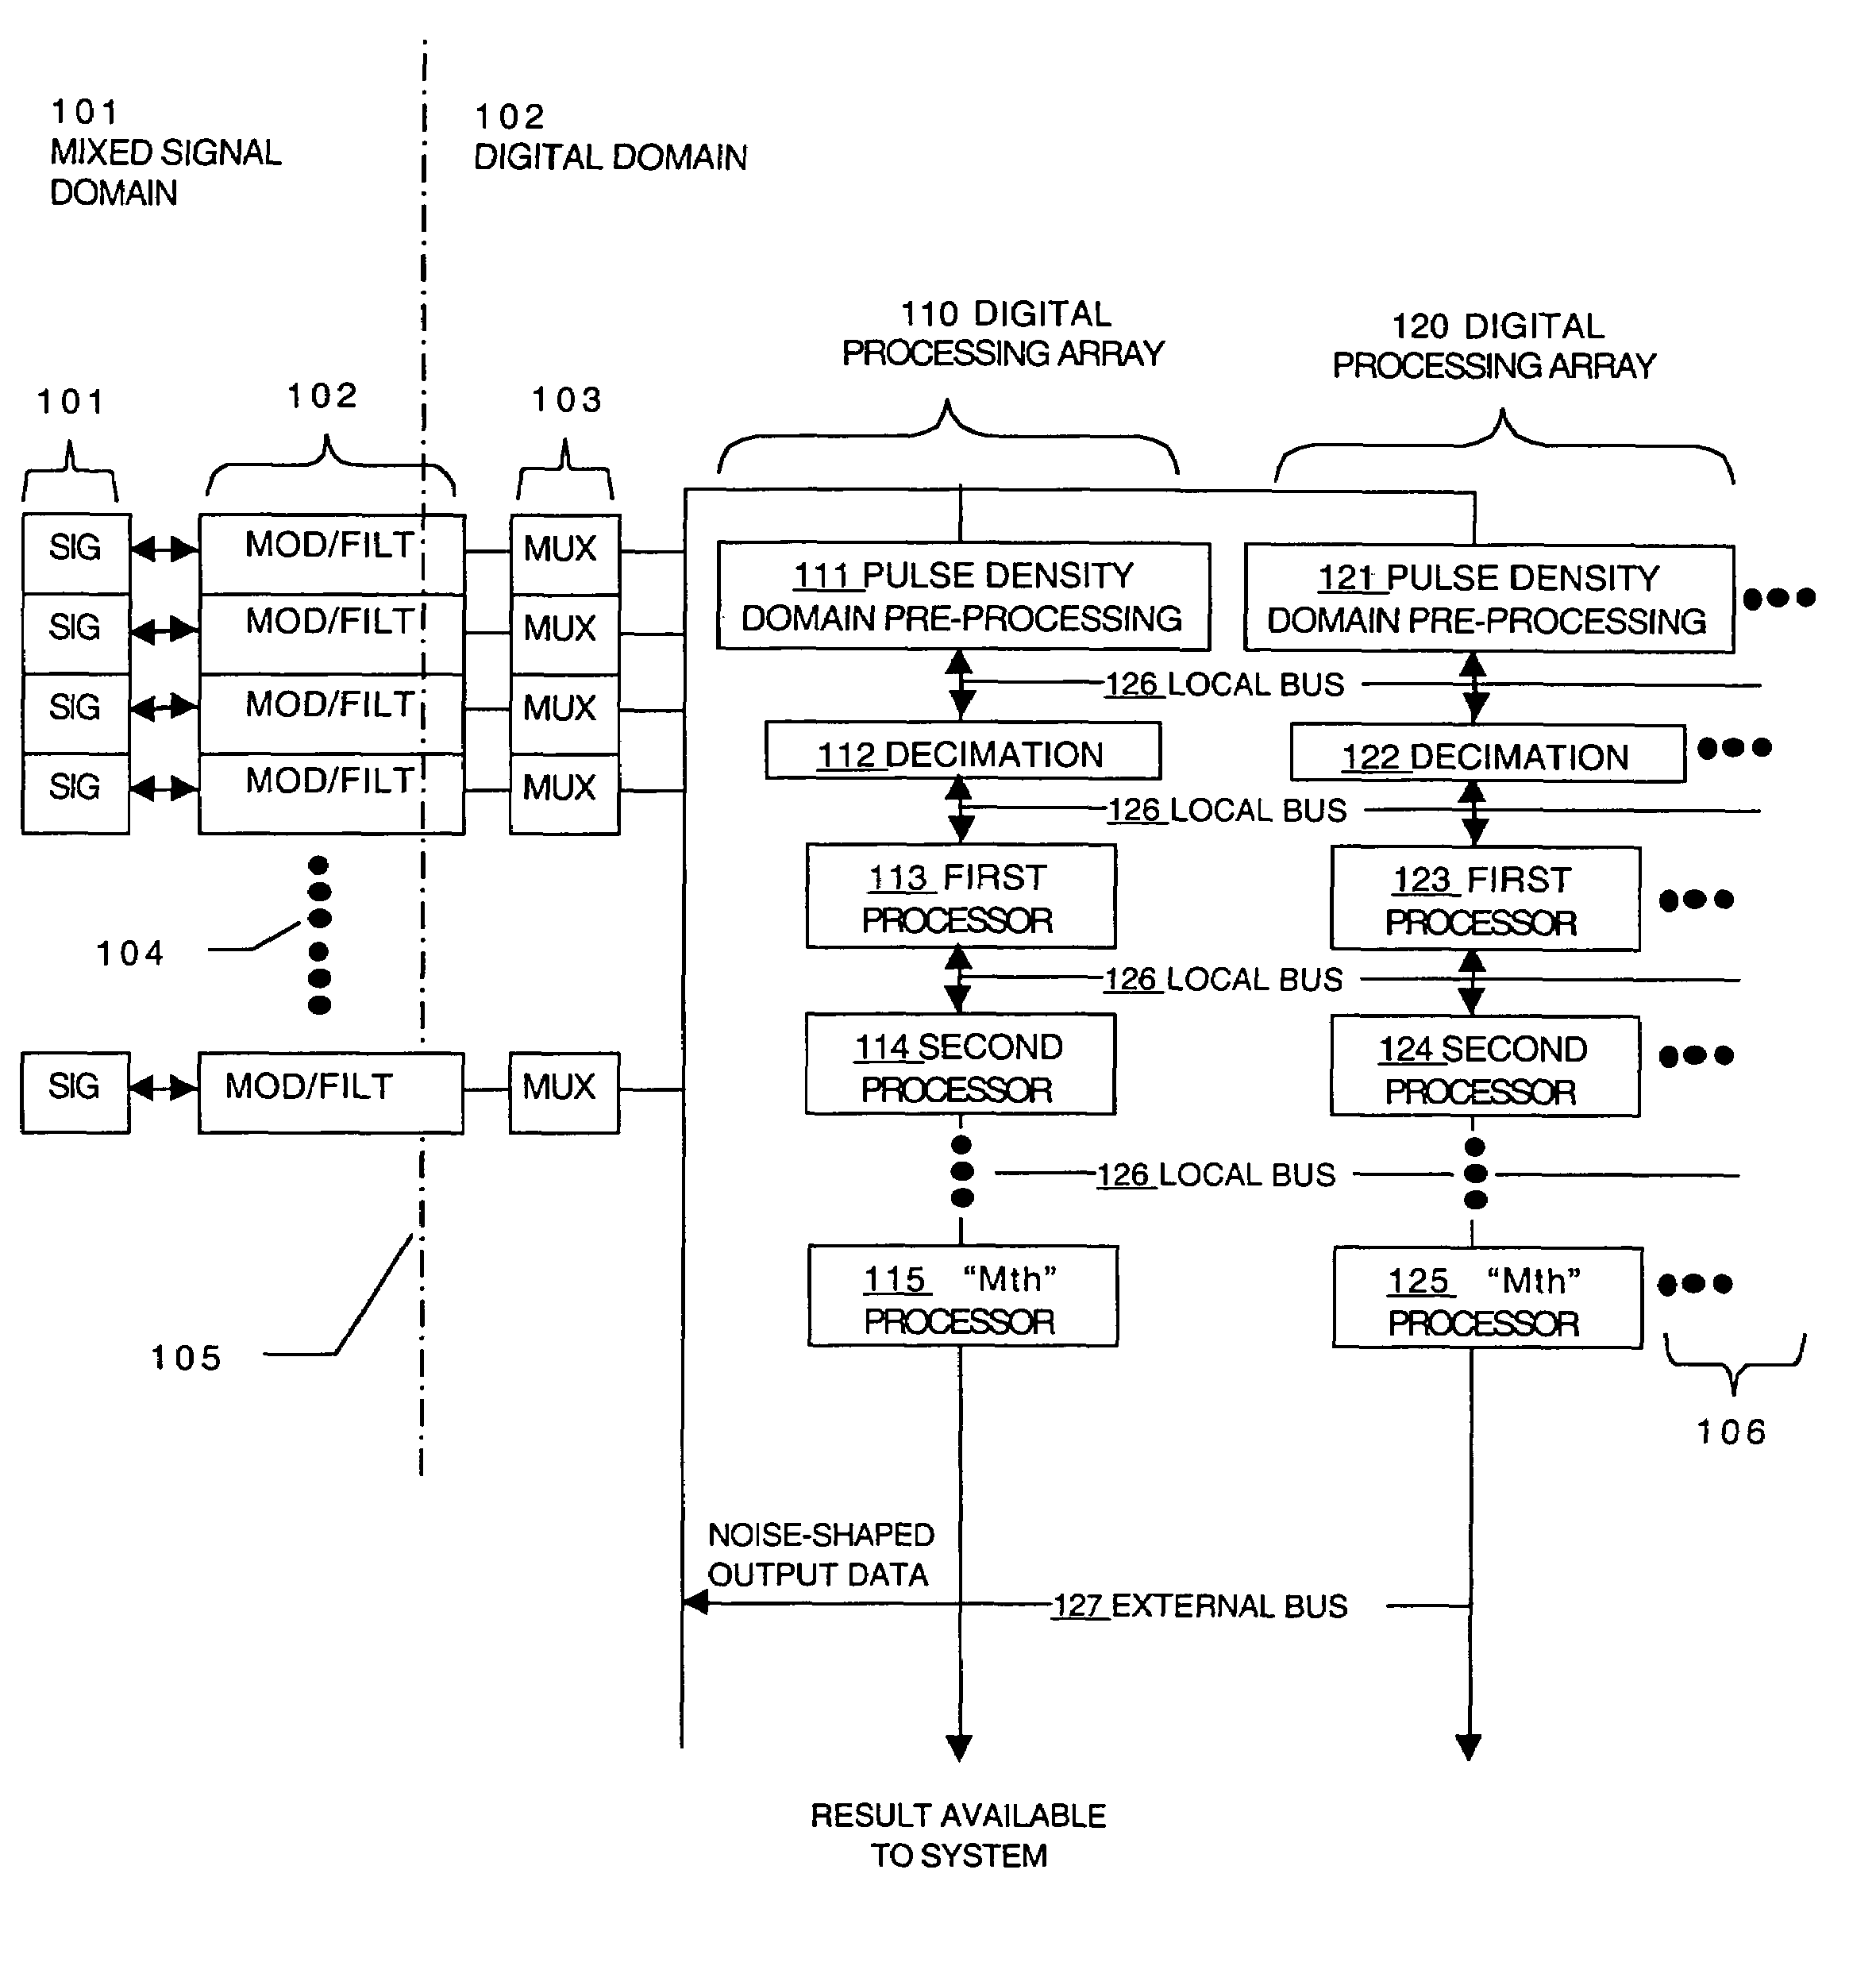 Analog I/O with digital signal processor array